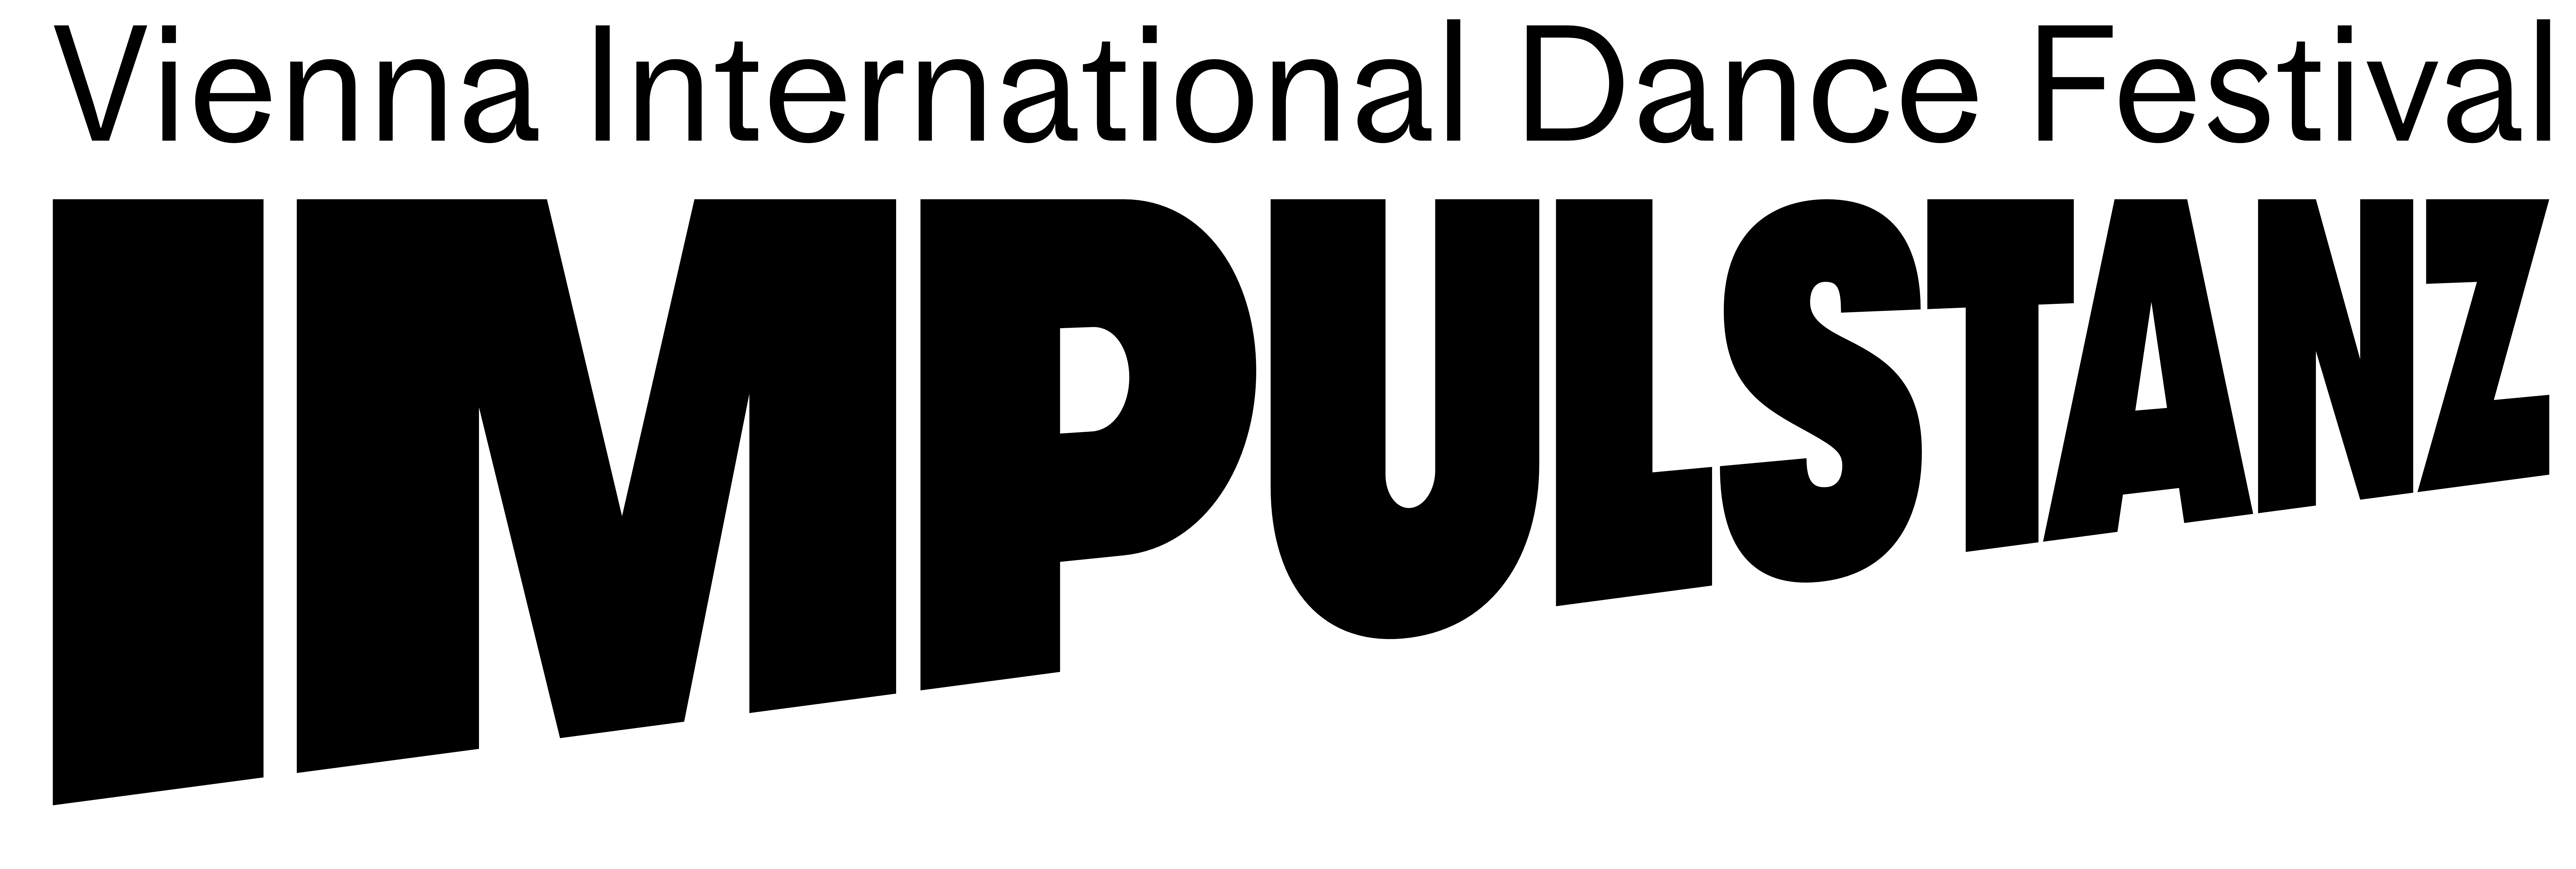 Impulstanz Logo 2021 ©Impulstanz 2021